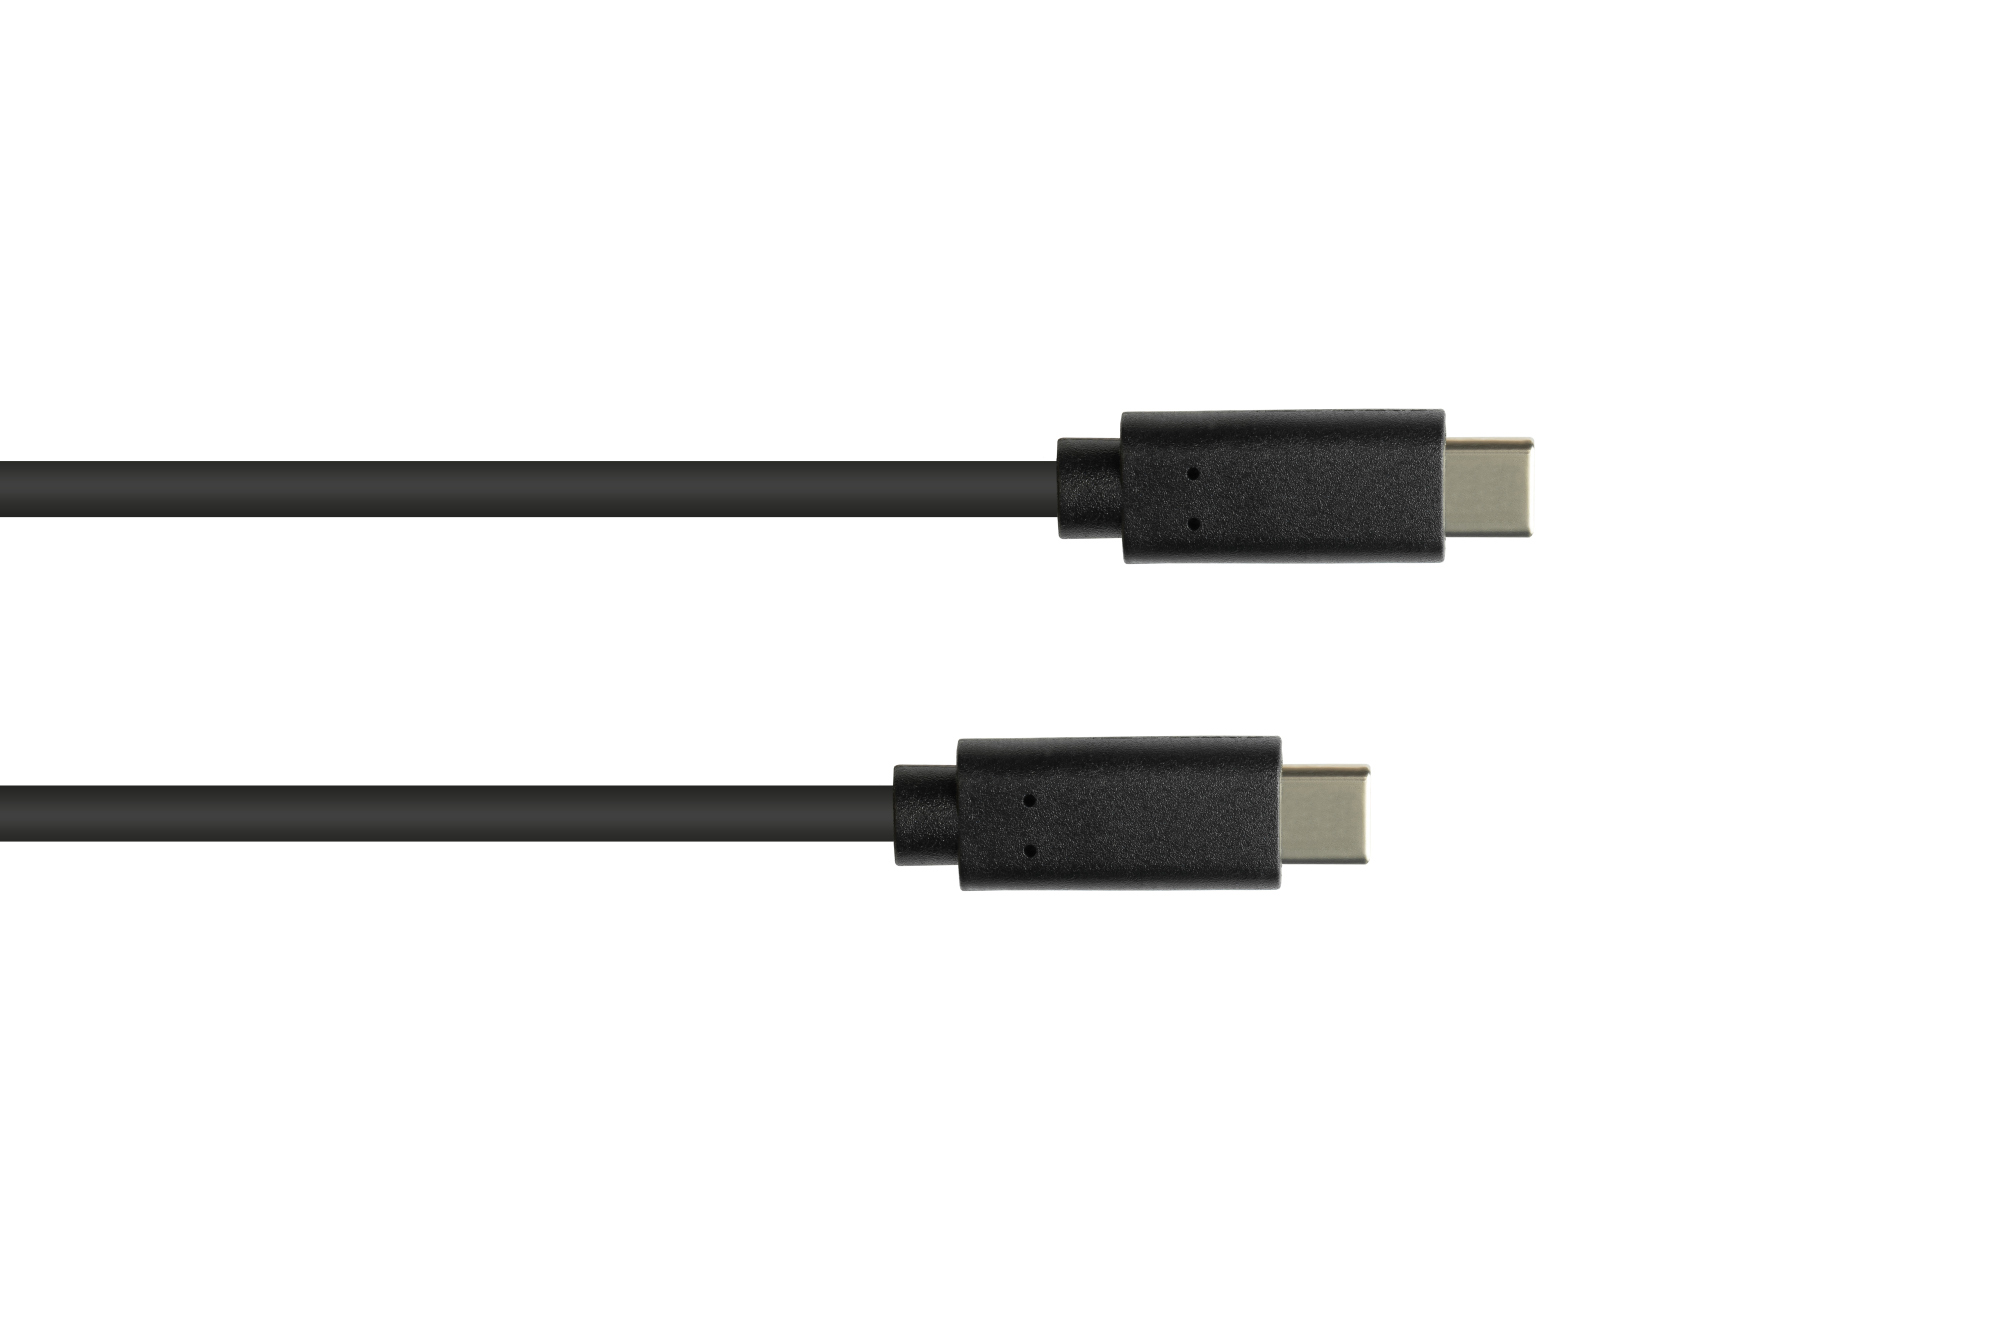 Lade- und Datenkabel USB 3.1 (Gen.1), USB-C™ Stecker beidseitig, CU, schwarz, 2m, Good Connections®